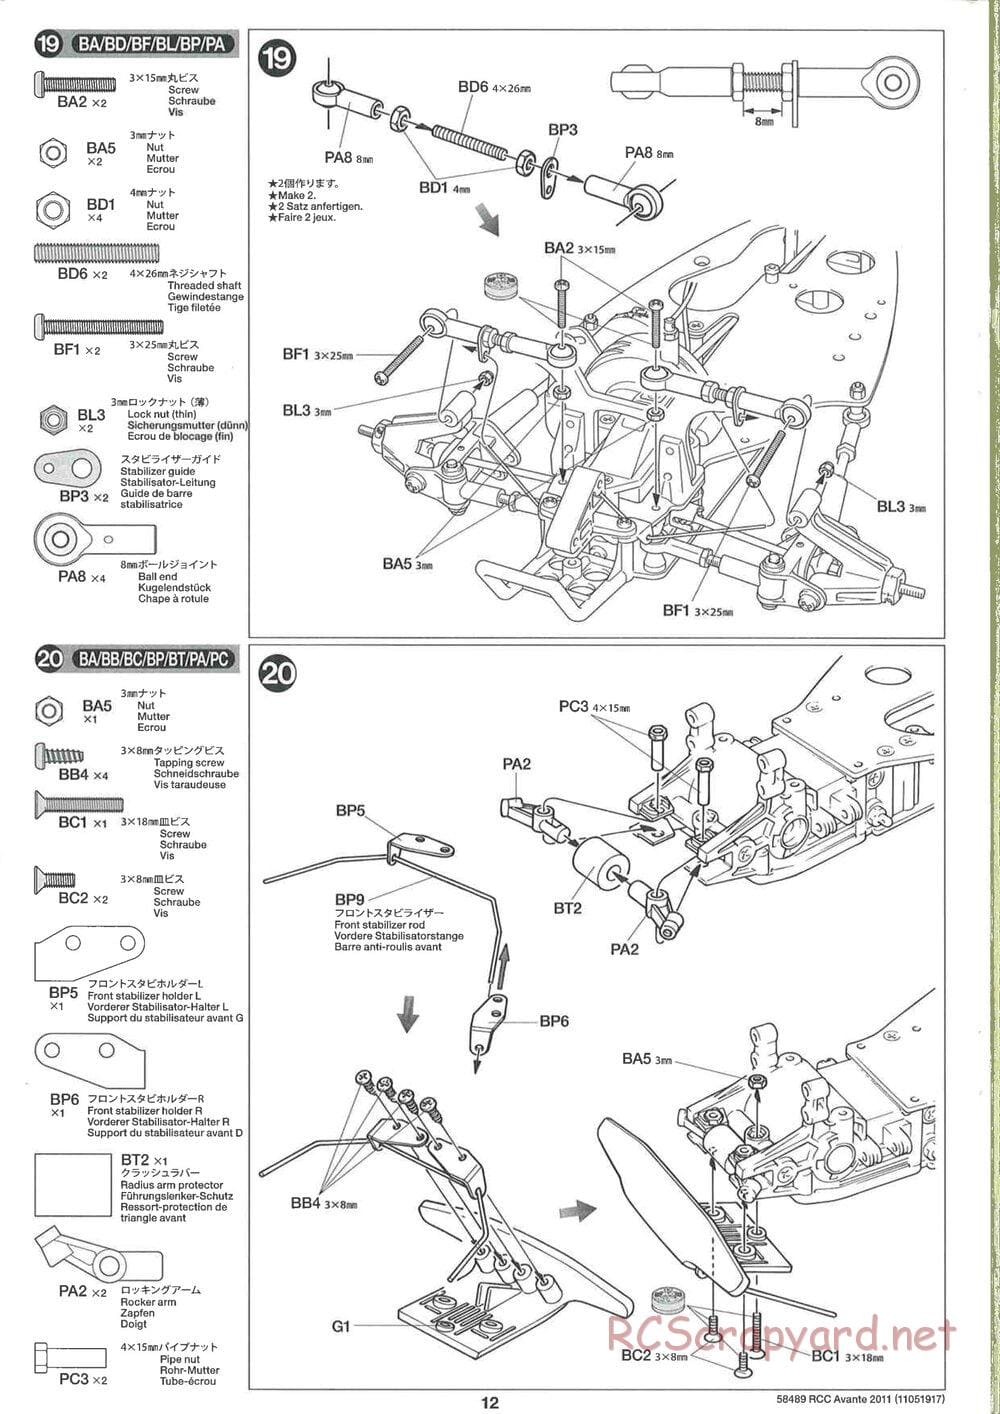 Tamiya - Avante 2011 - AV Chassis - Manual - Page 12